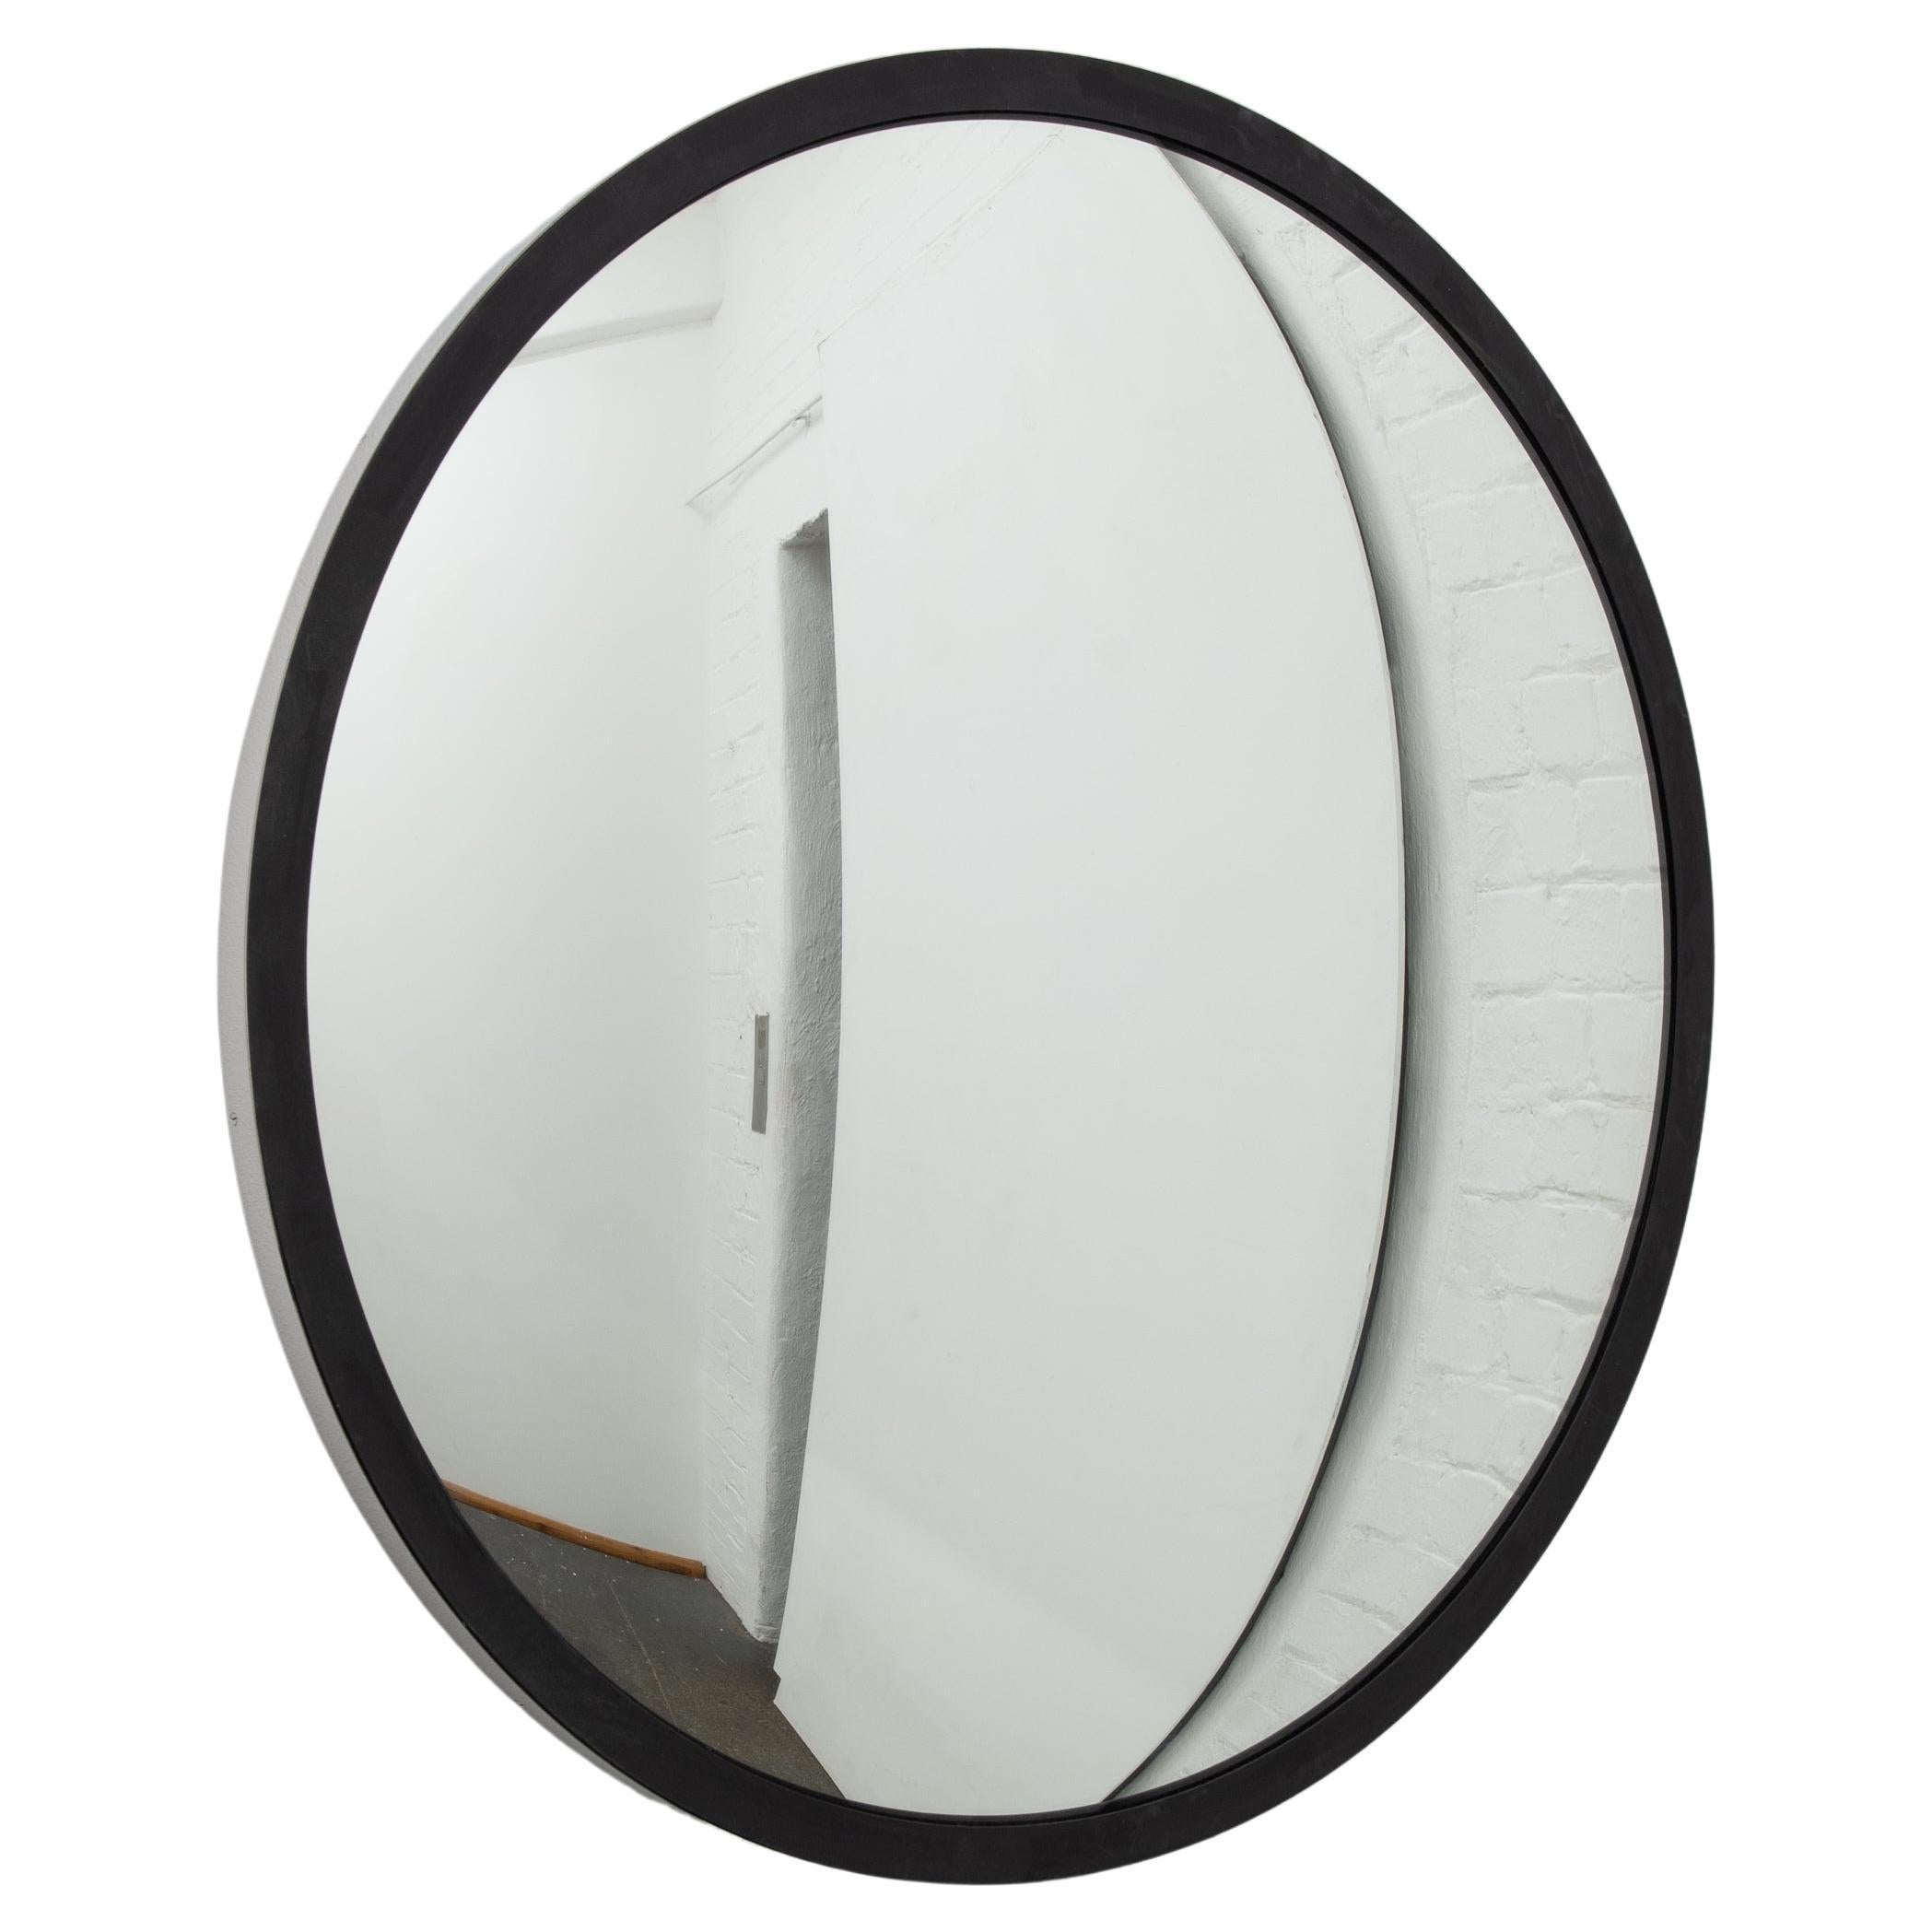 Miroir rond convexe Orbis Handcraft, cadre en acier inoxydable et noir, large